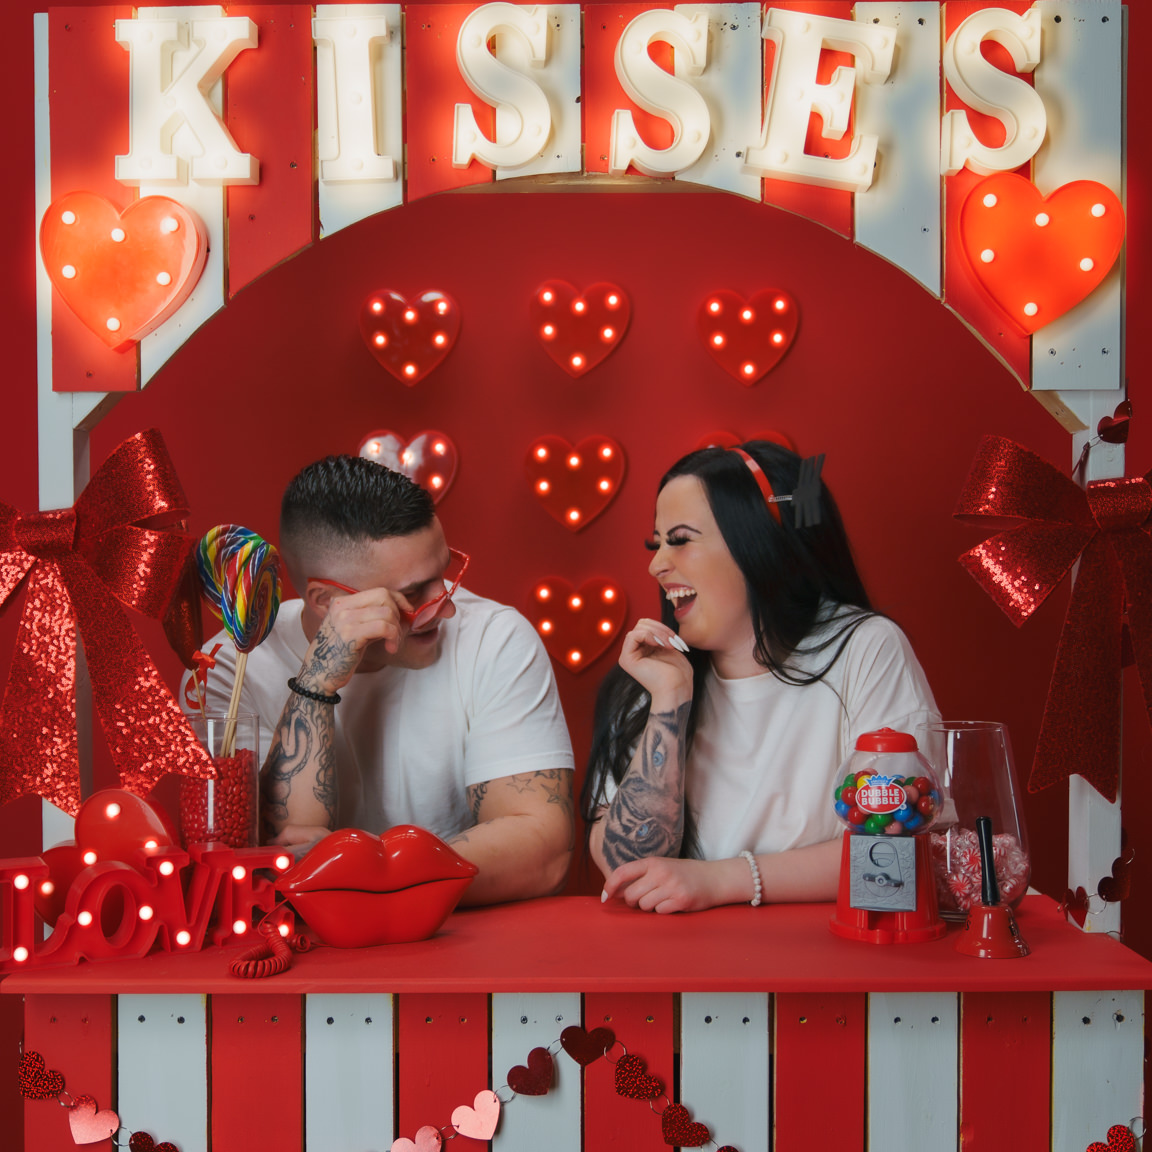 Couple at kissing booth at snap foto club